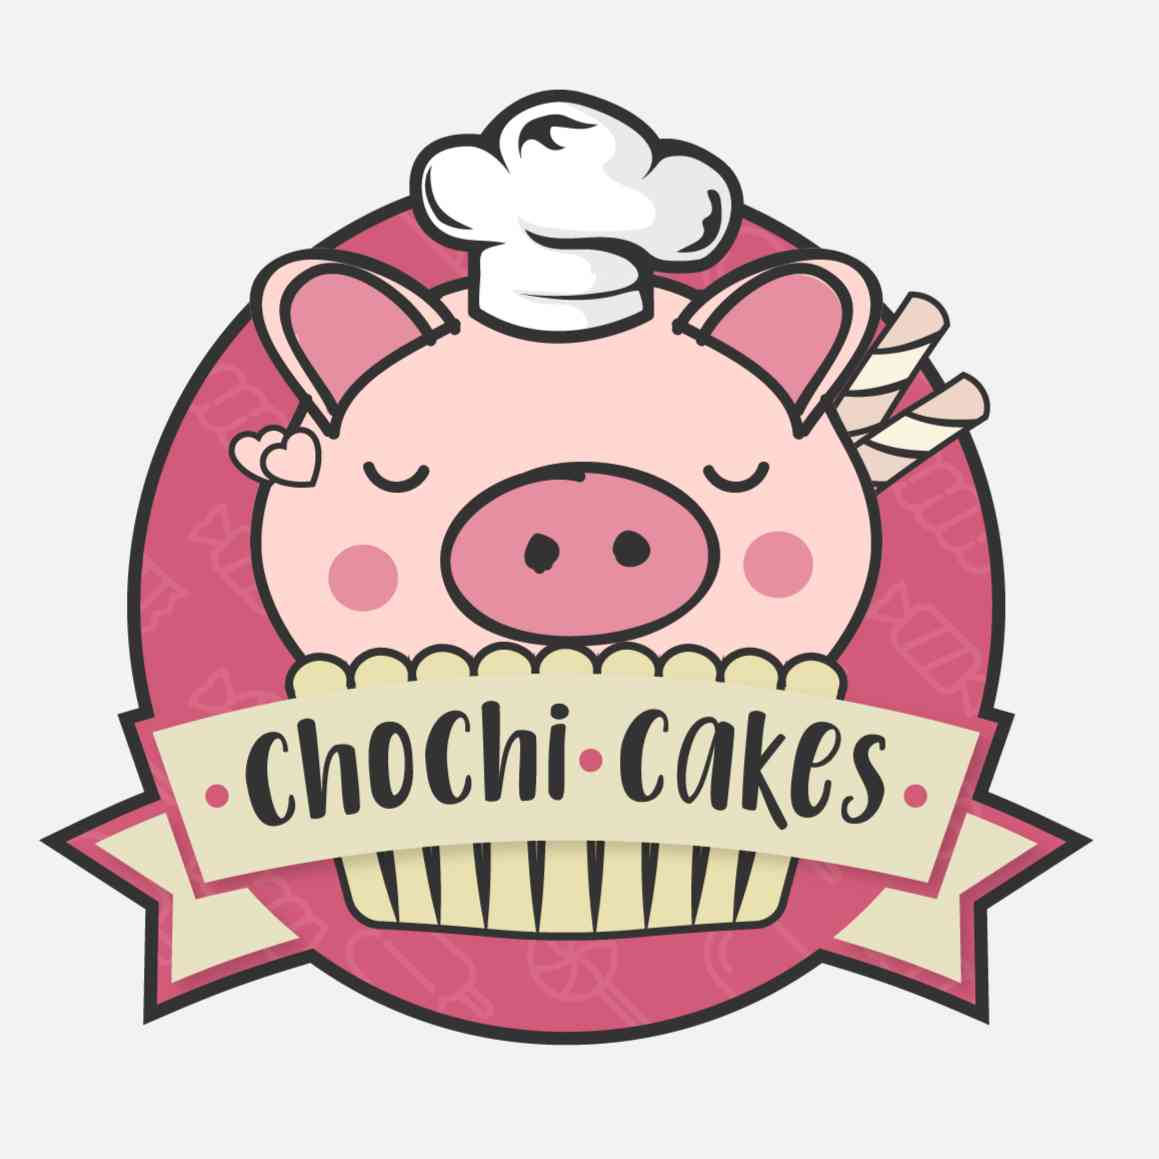 Chochi Cakes